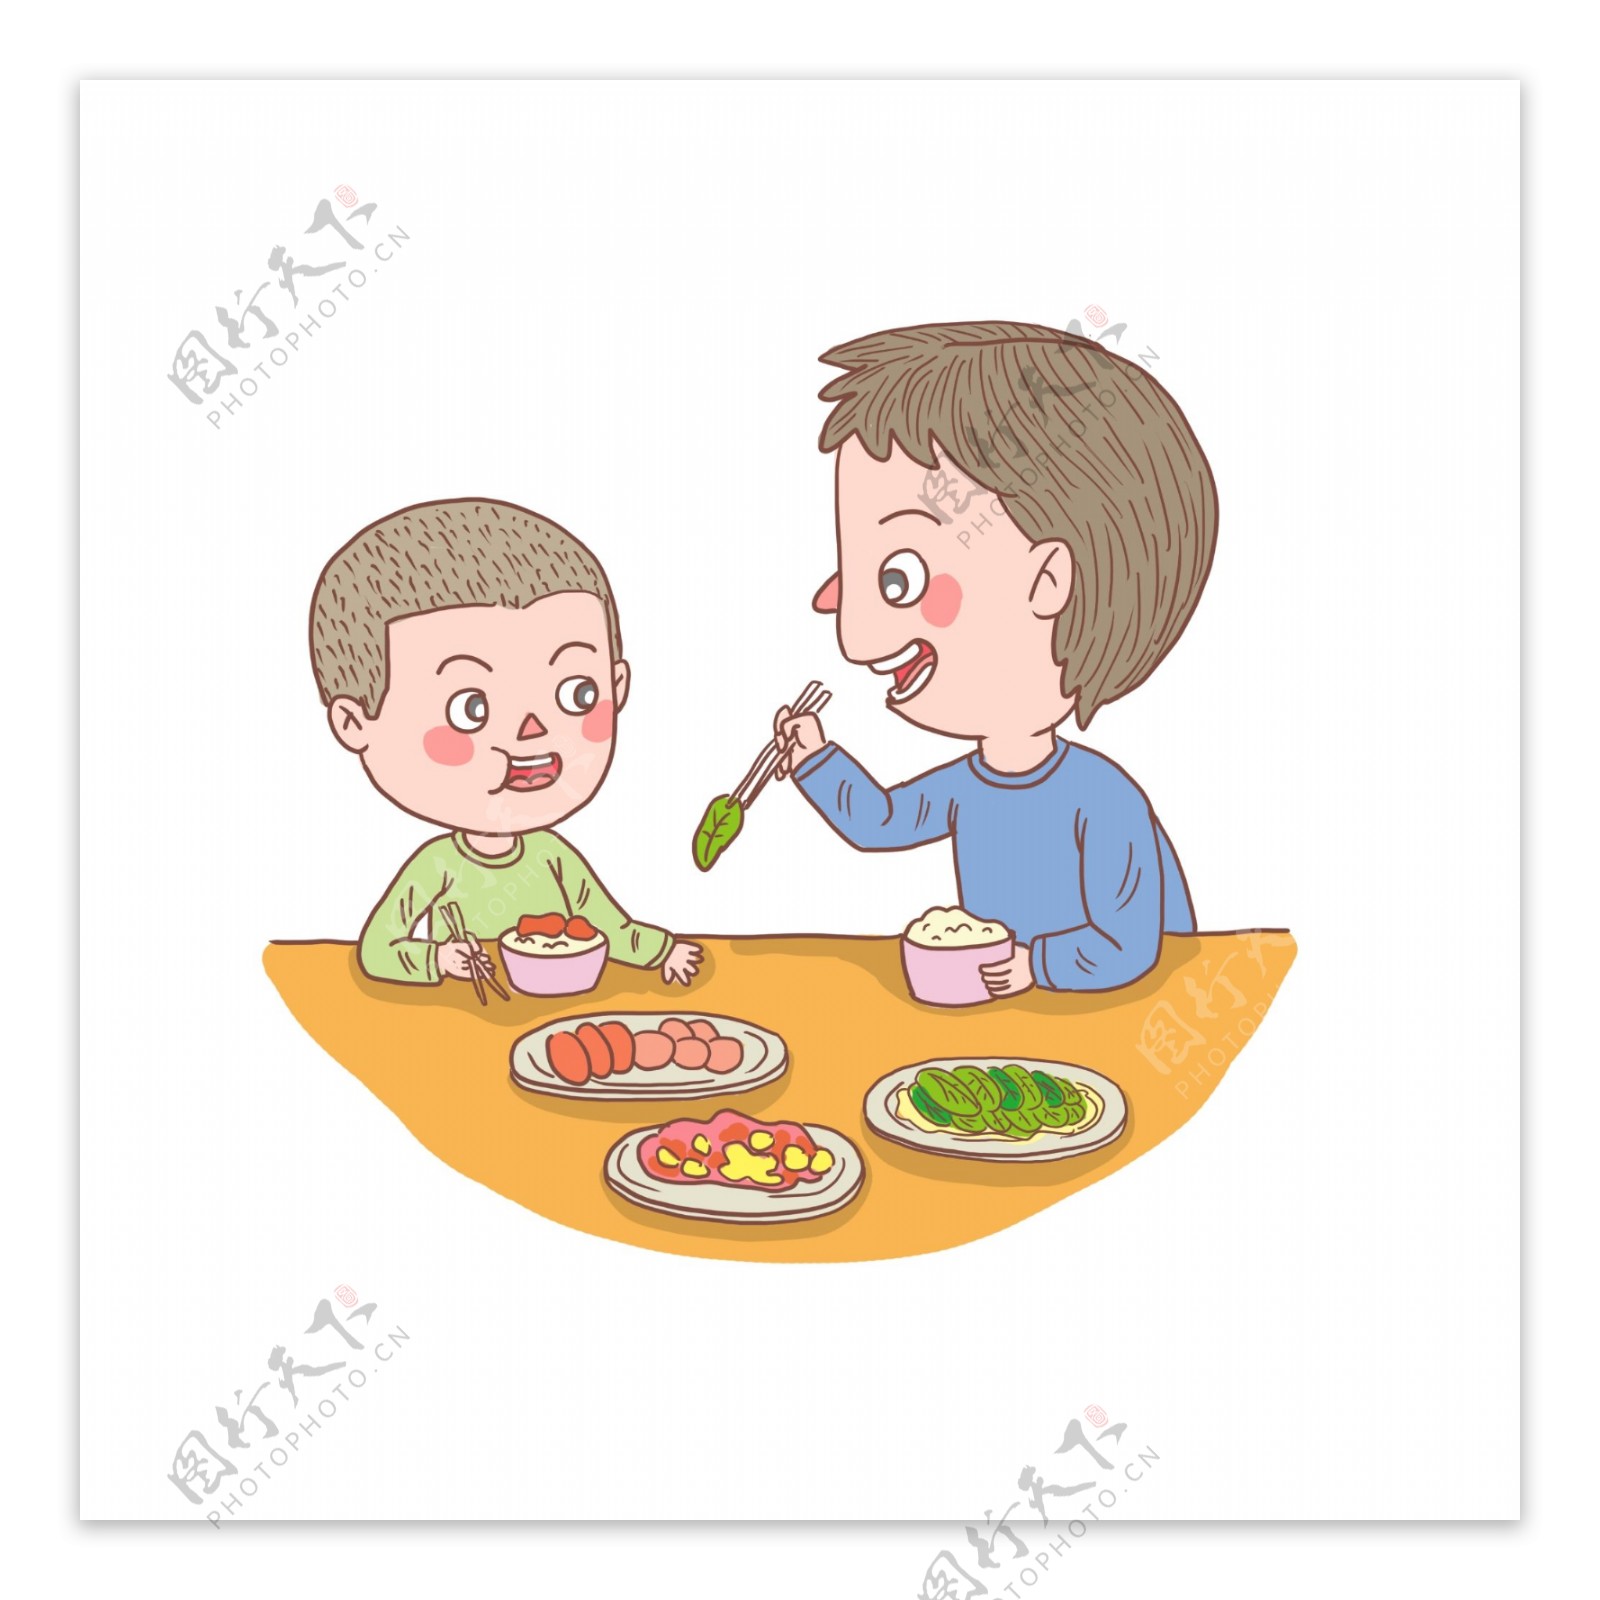 卡通手绘人物父亲和儿子吃饭